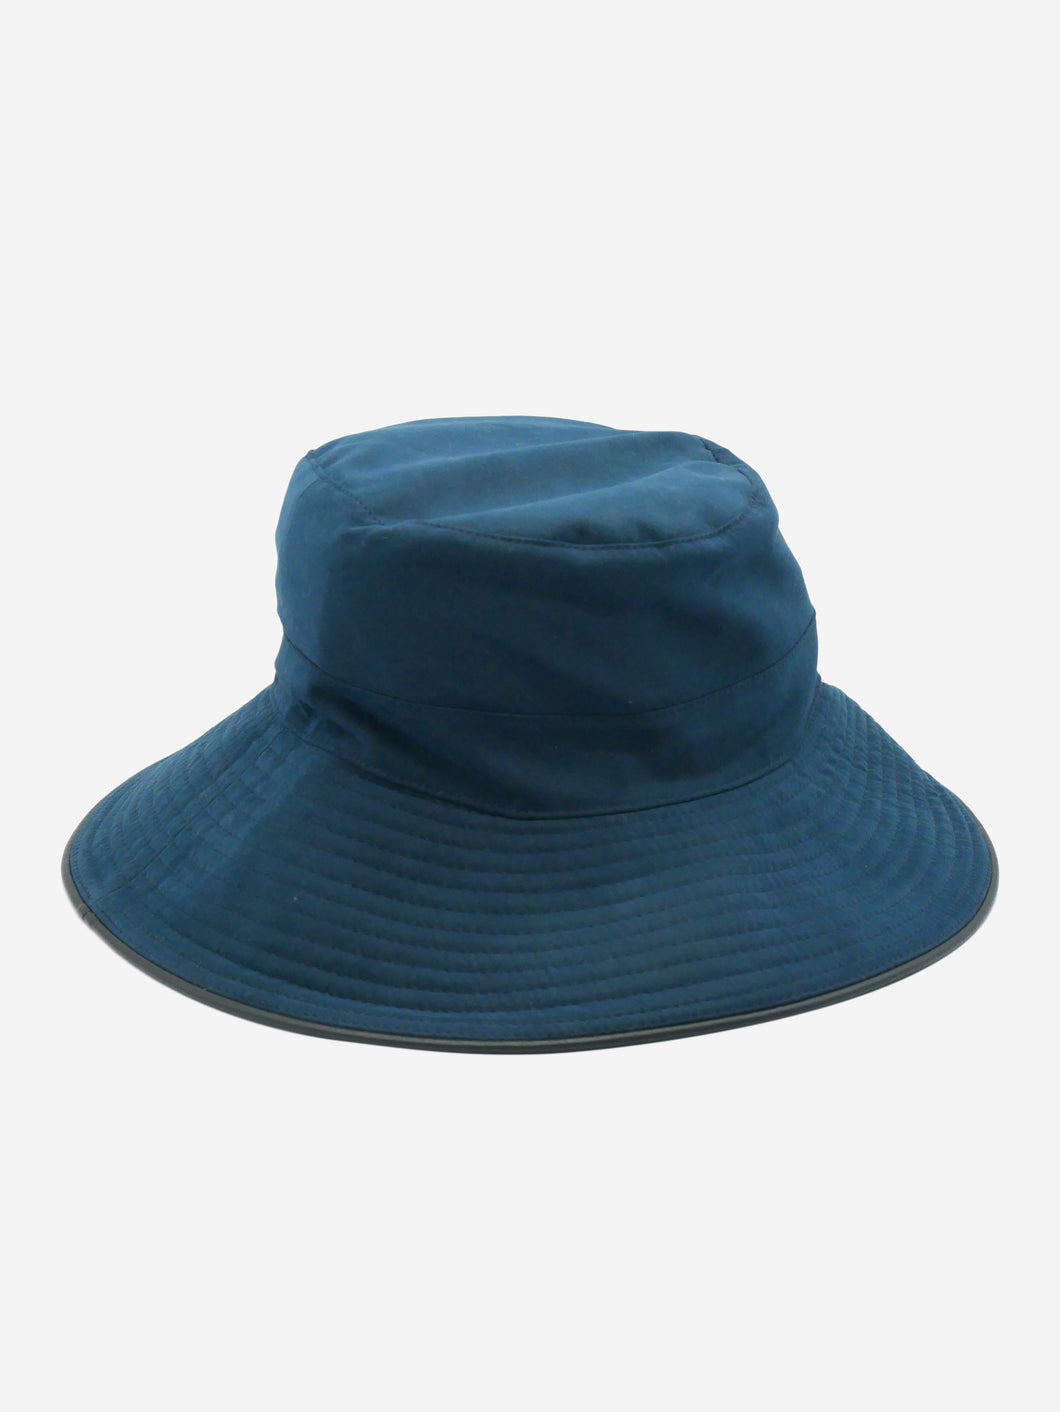 Blue bucket hat - size 56